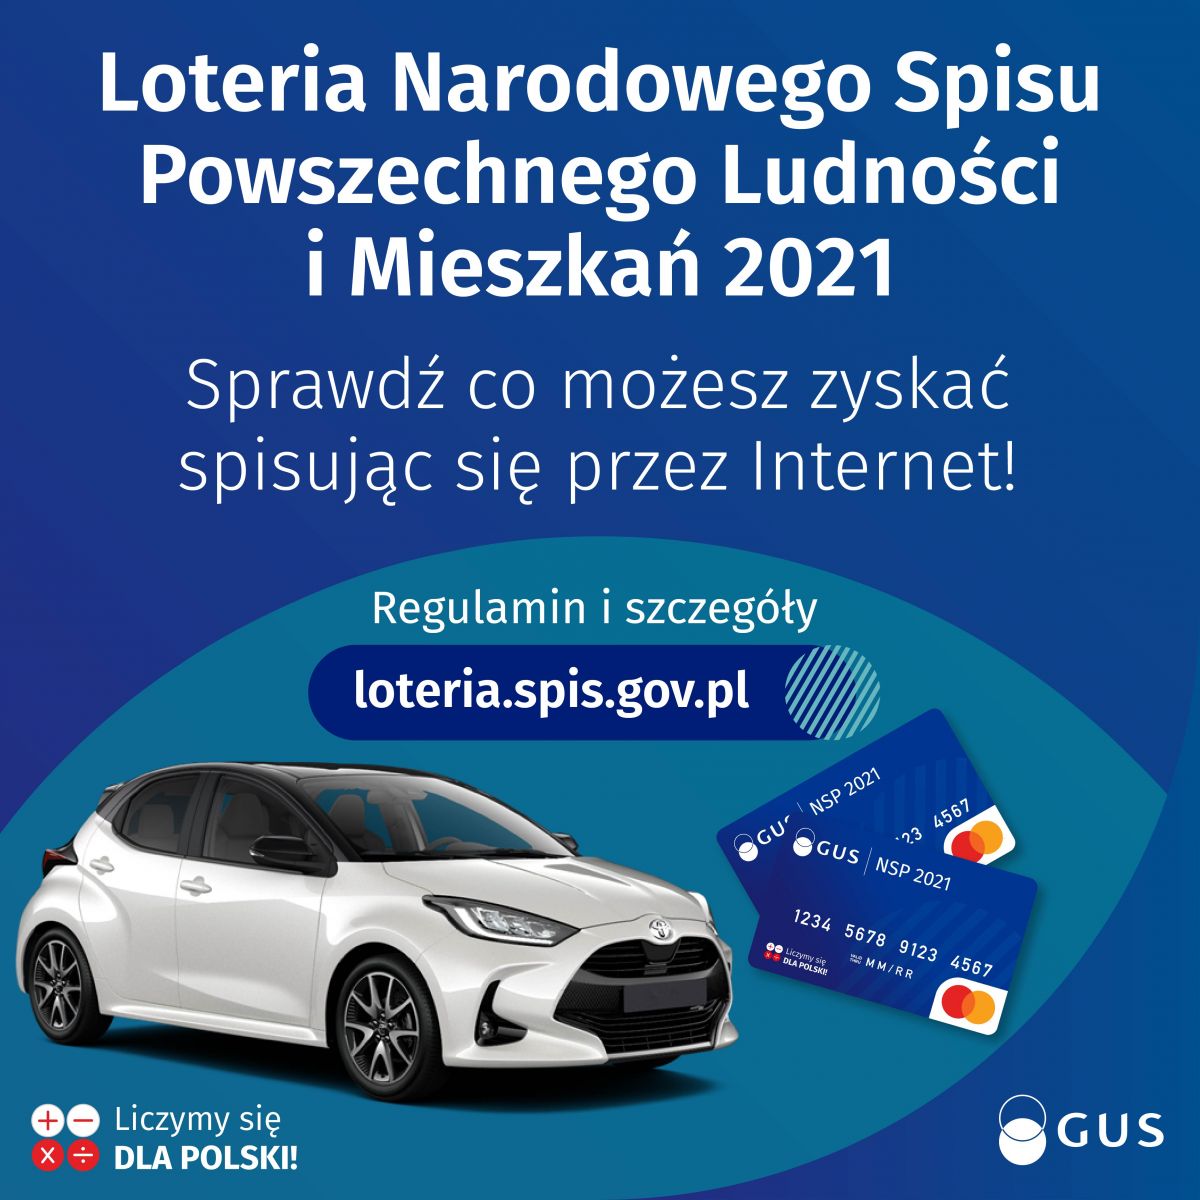 UWAGA! Loteria Narodowego Spisu Powszechnego Ludności i Mieszkań! cz 1